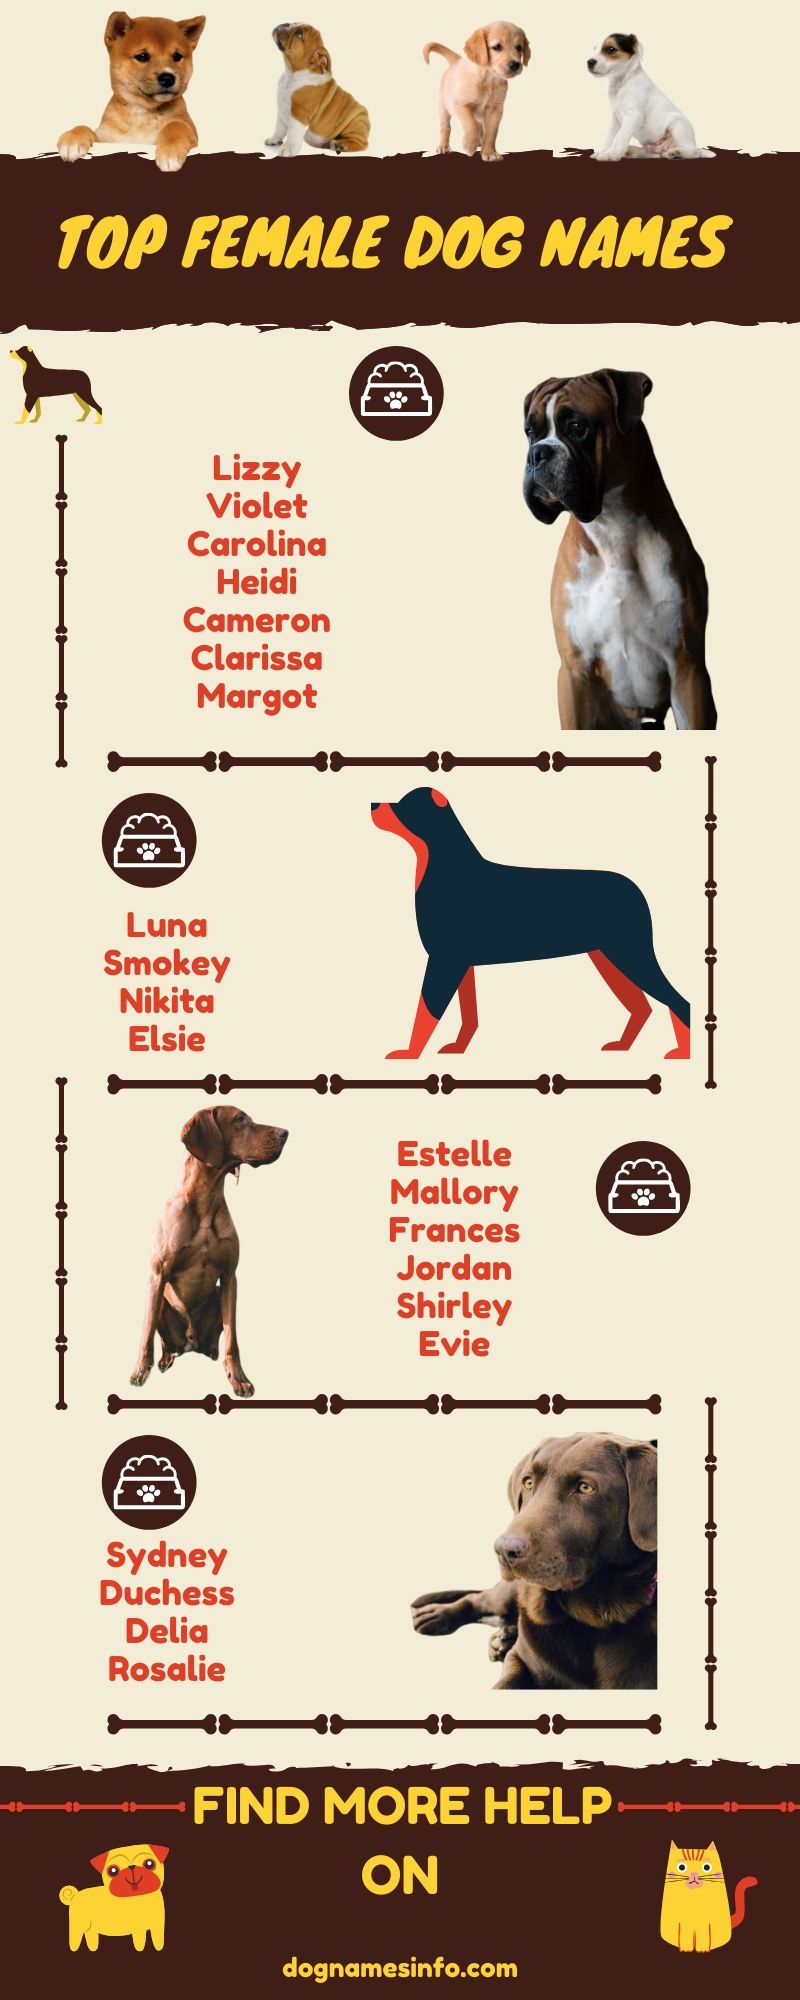 Top Female dog names